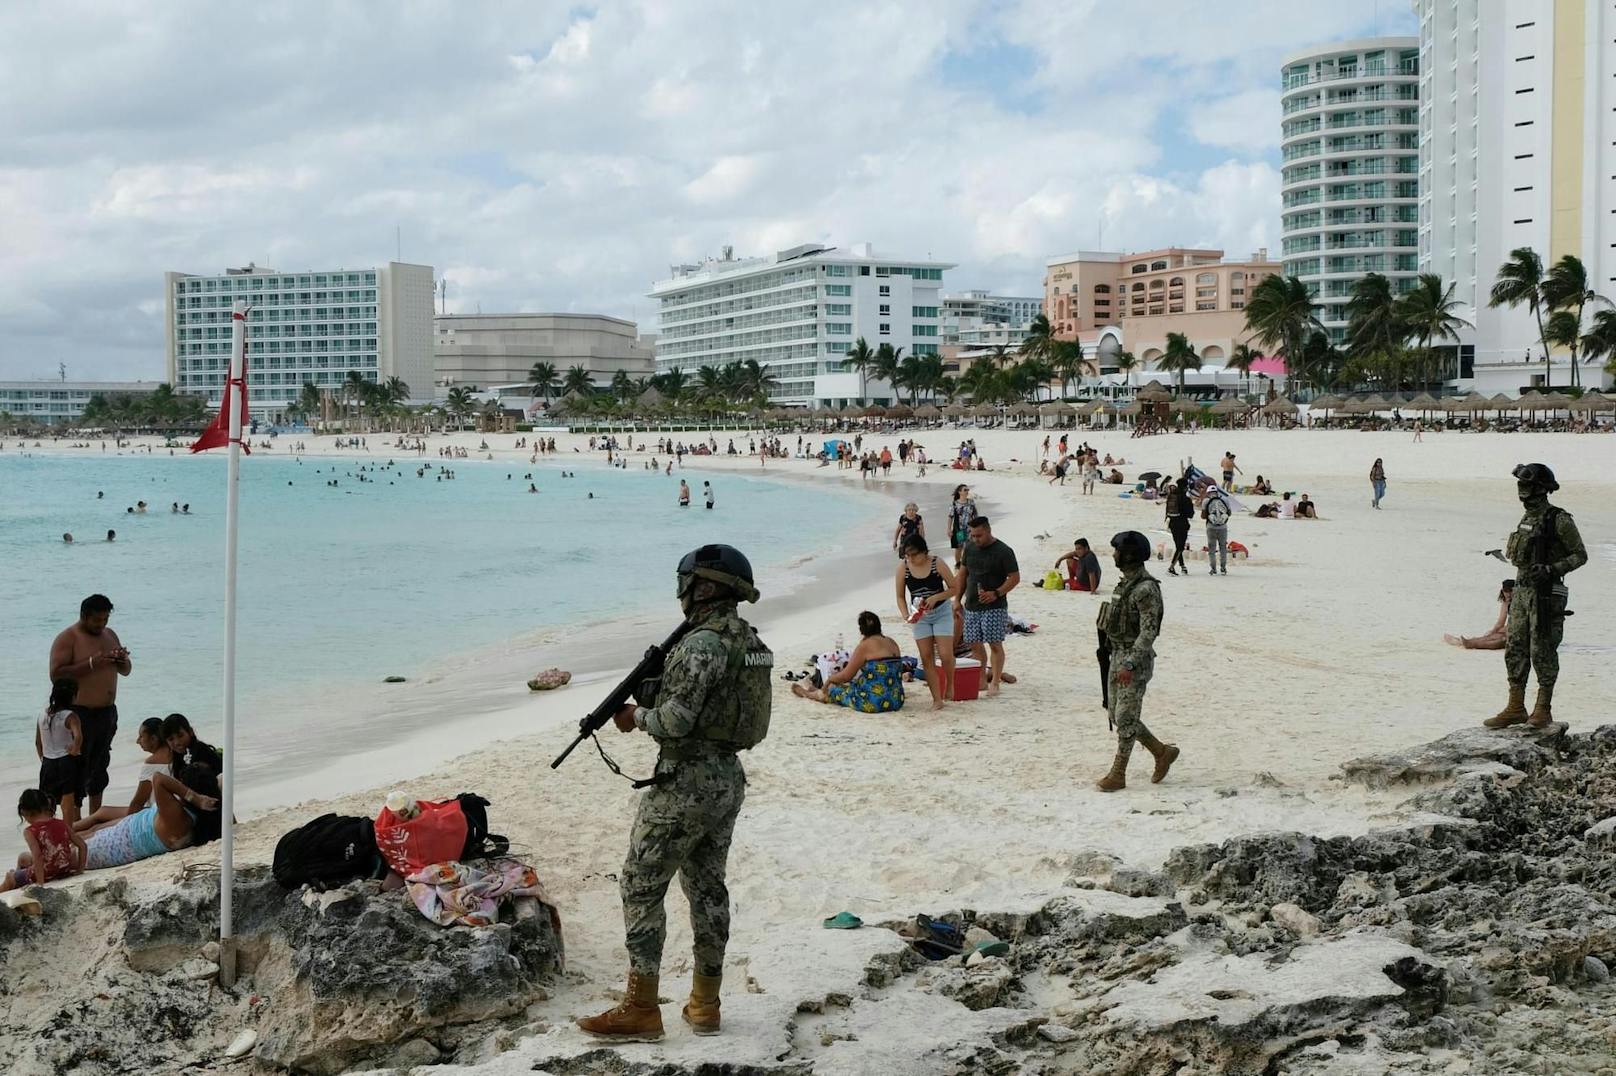 Mitglieder der Navy patrouillieren an einem Strand in Cancun.